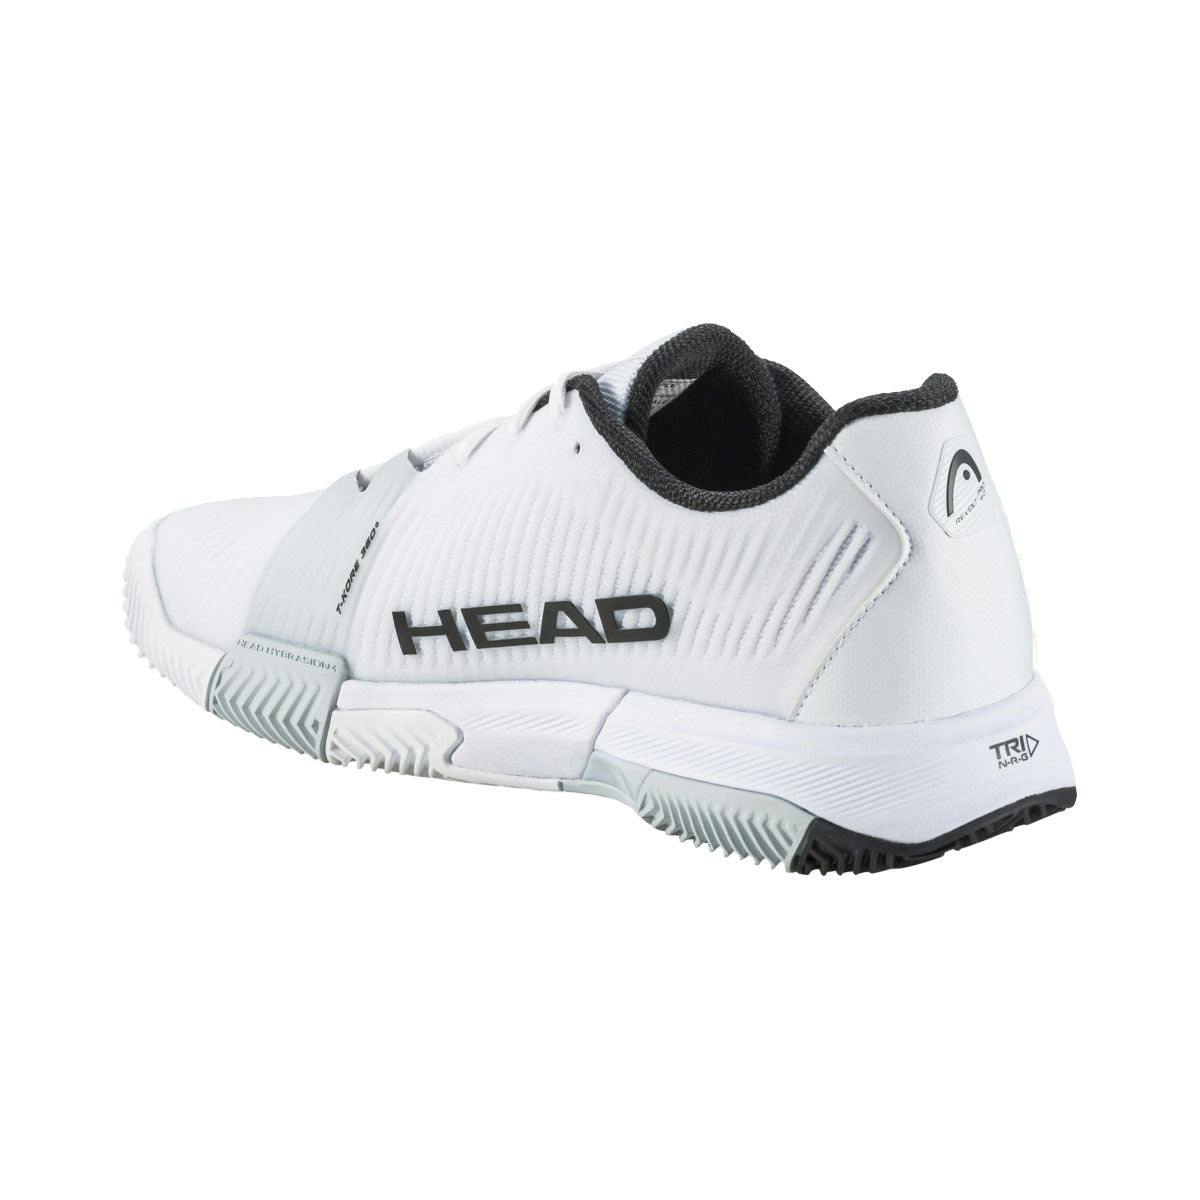 Head Revolt Pro 4.0 Mens Tennis Shoes - Wht/Blk Whbk / D Medium / 9.0